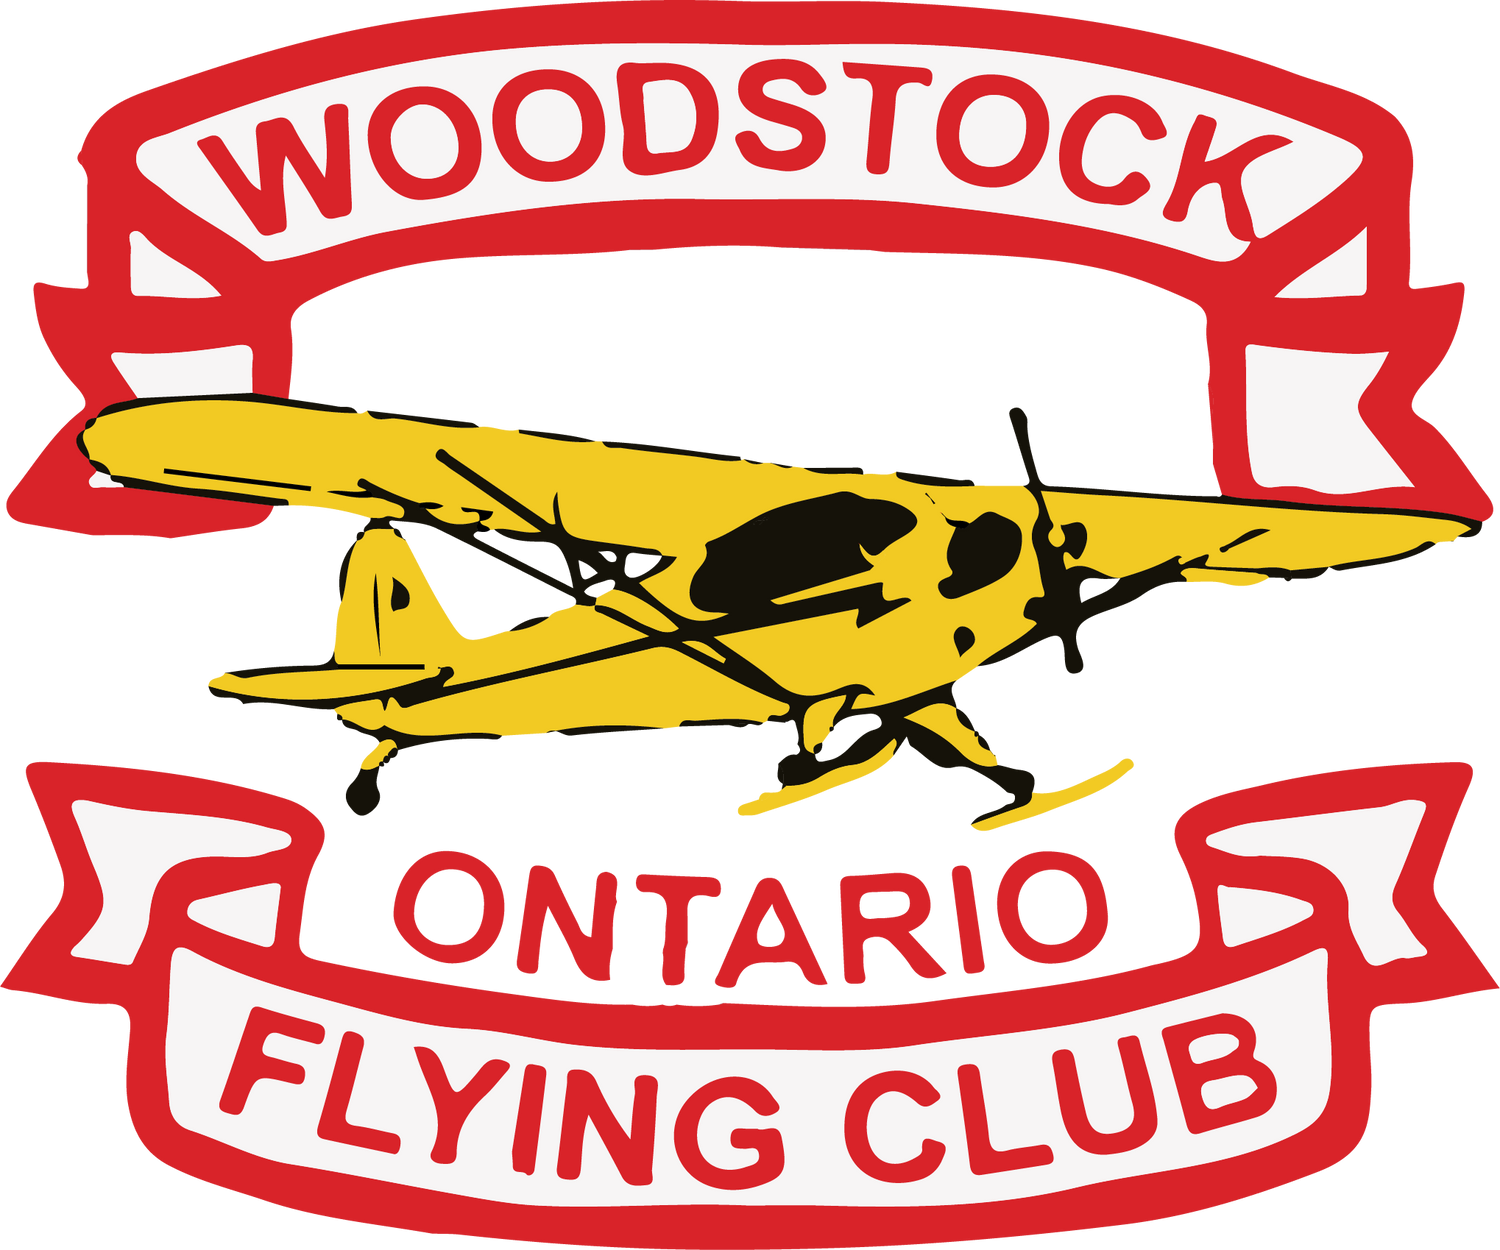 Woodstock Ontario Flying Club Apparel